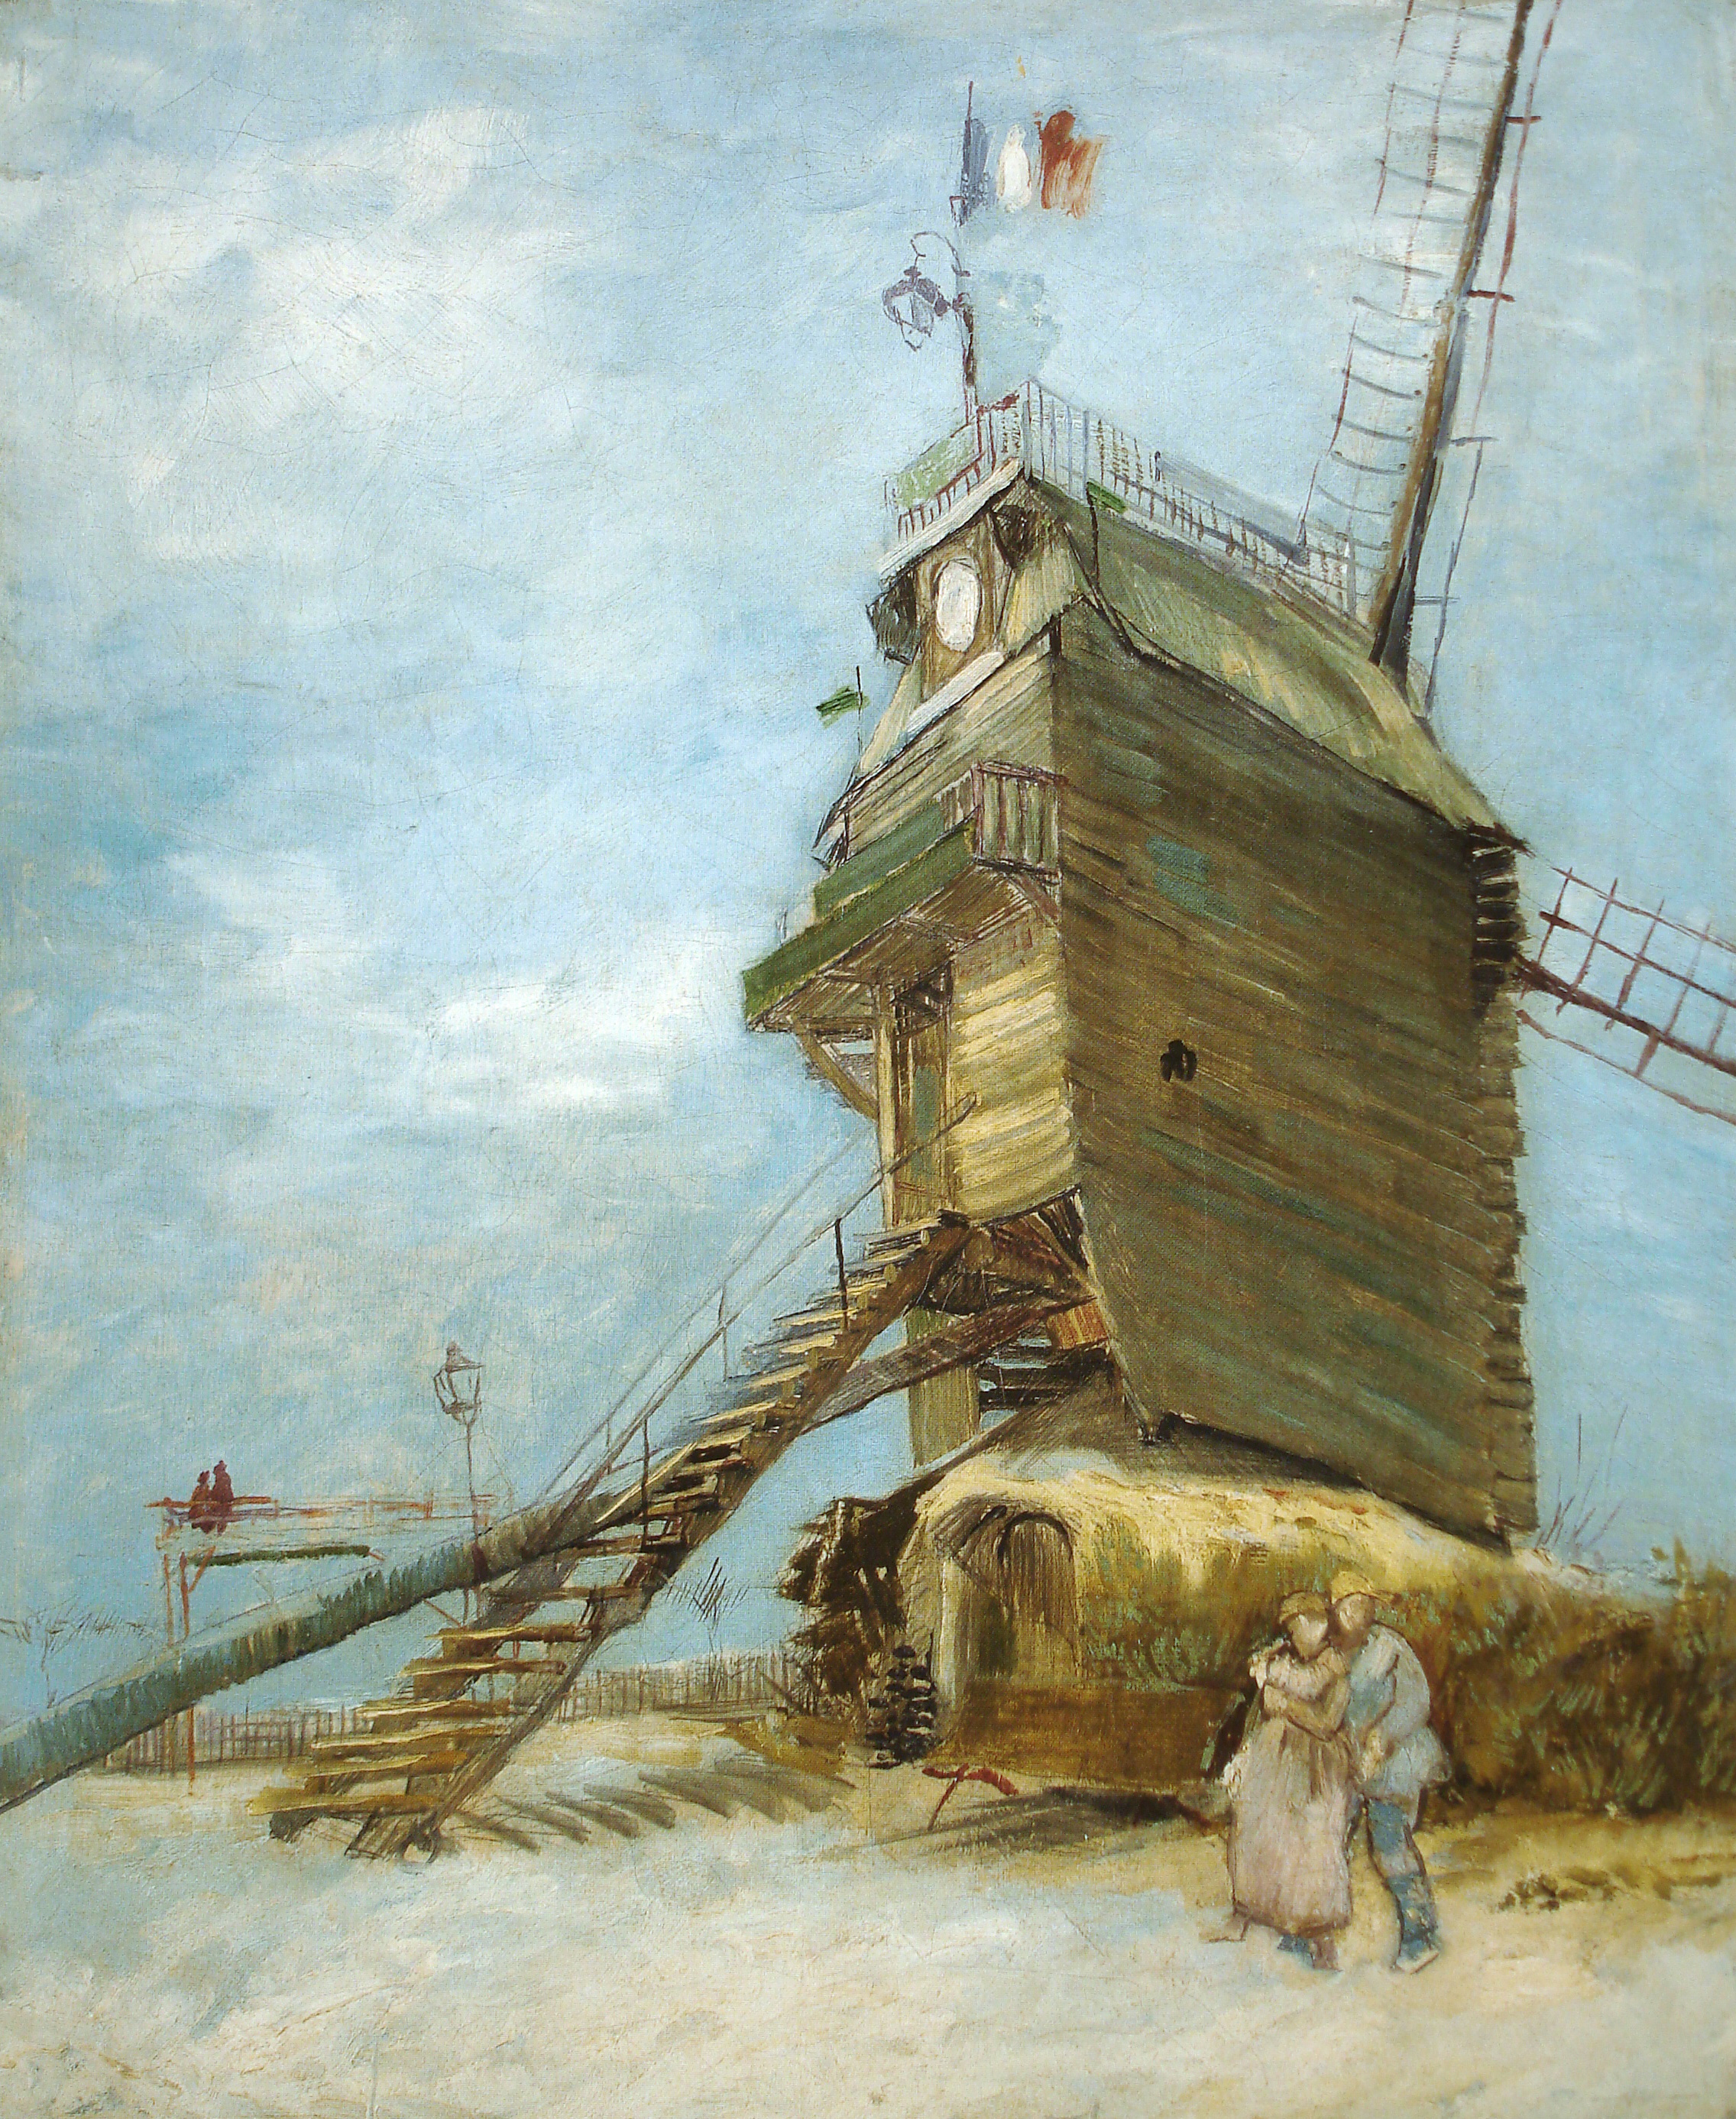  Van Gogh painting of a beach house